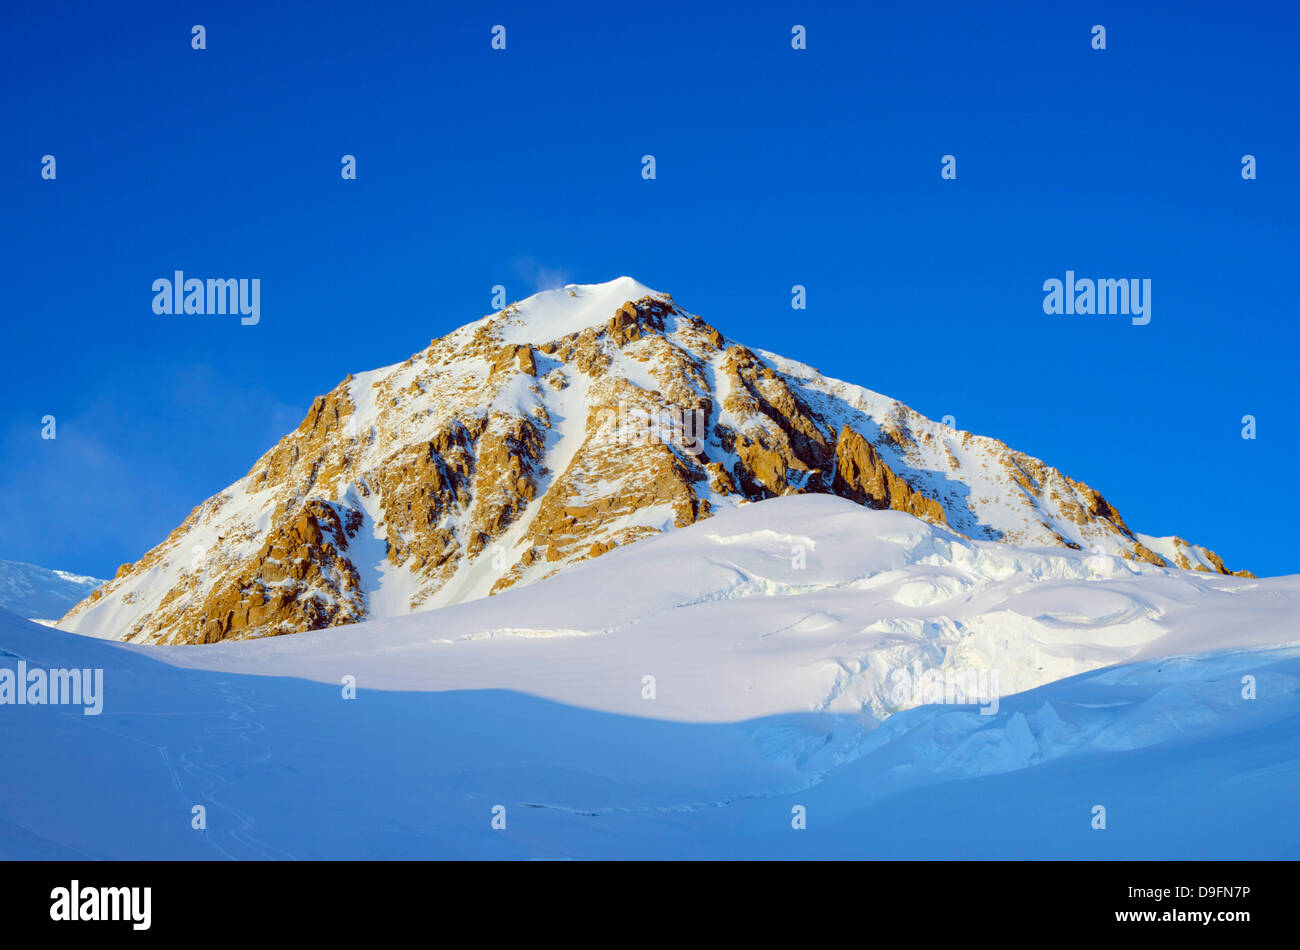 Le mont McKinley, 6194m, la plus haute montagne d'Amérique du Nord, le parc national Denali, Alaska, USA Banque D'Images